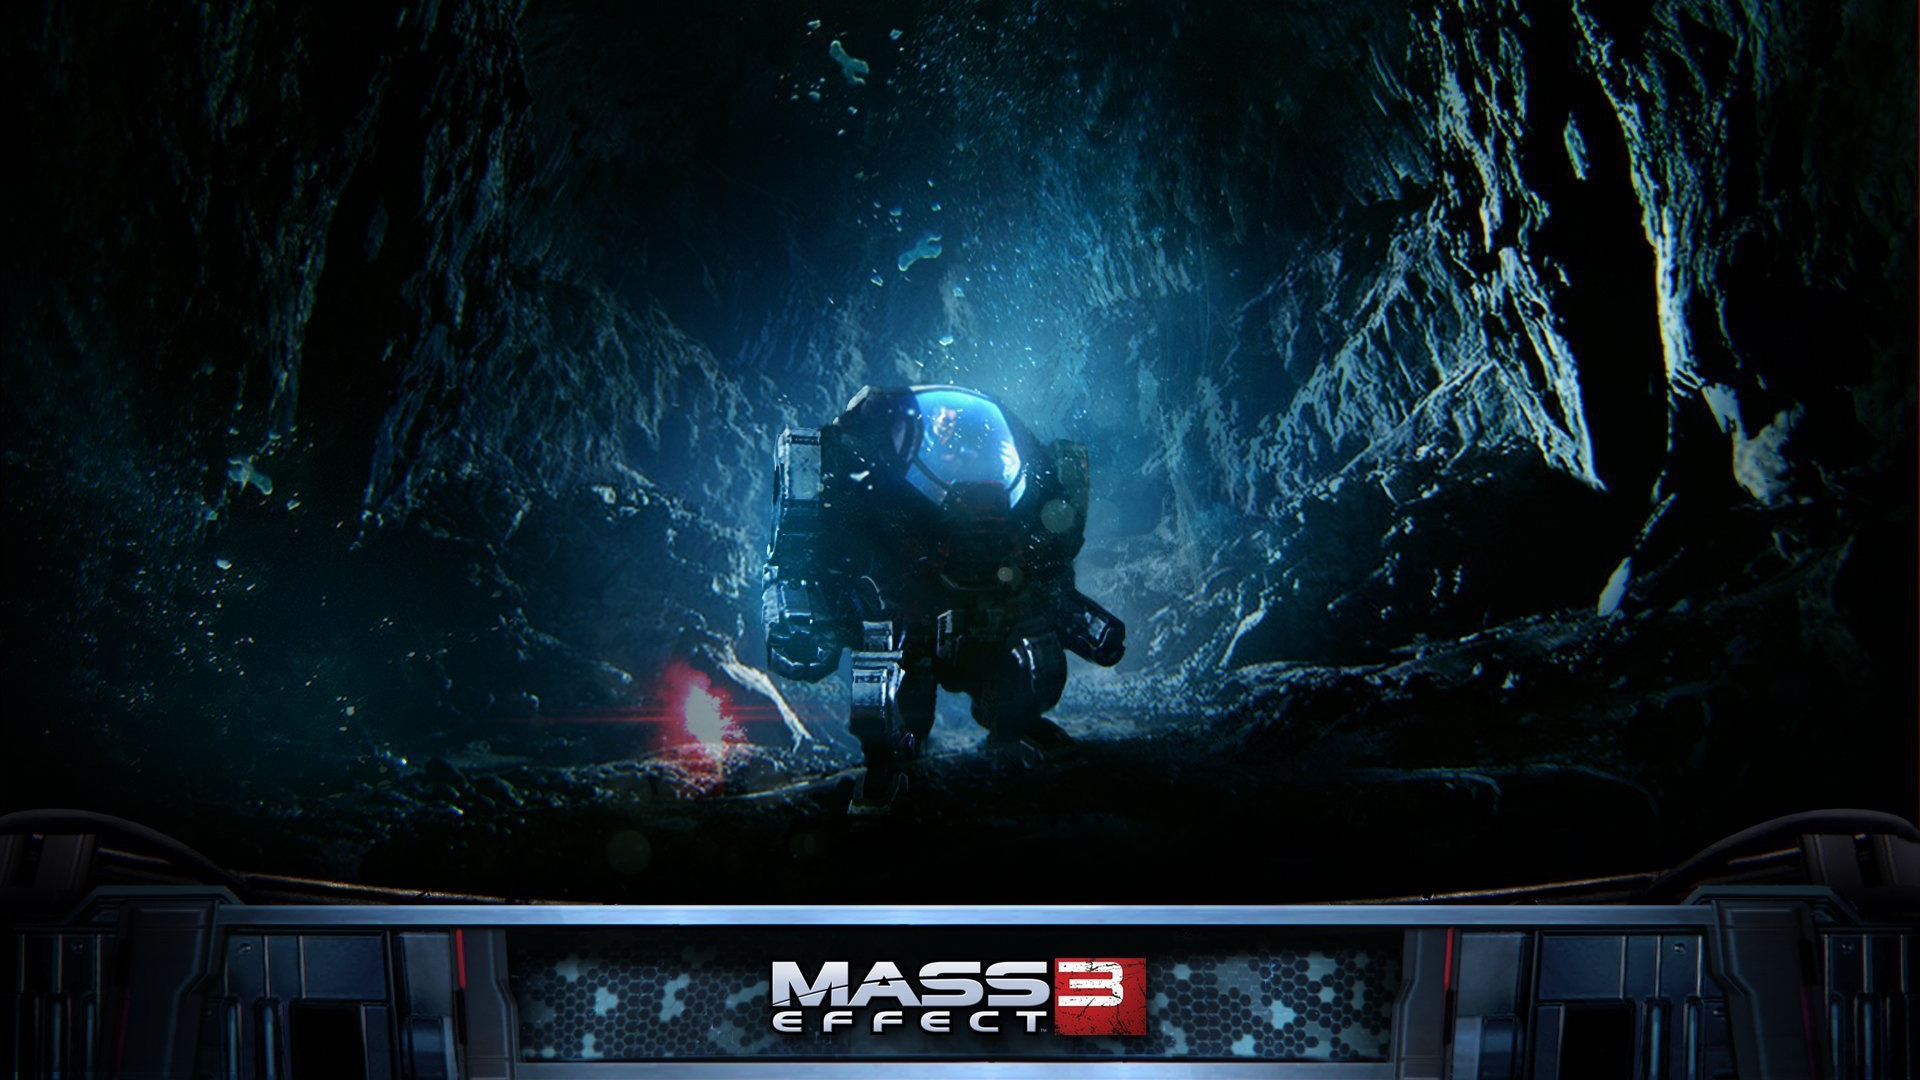 Mass Effect 3 Robot for 1920 x 1080 HDTV 1080p resolution